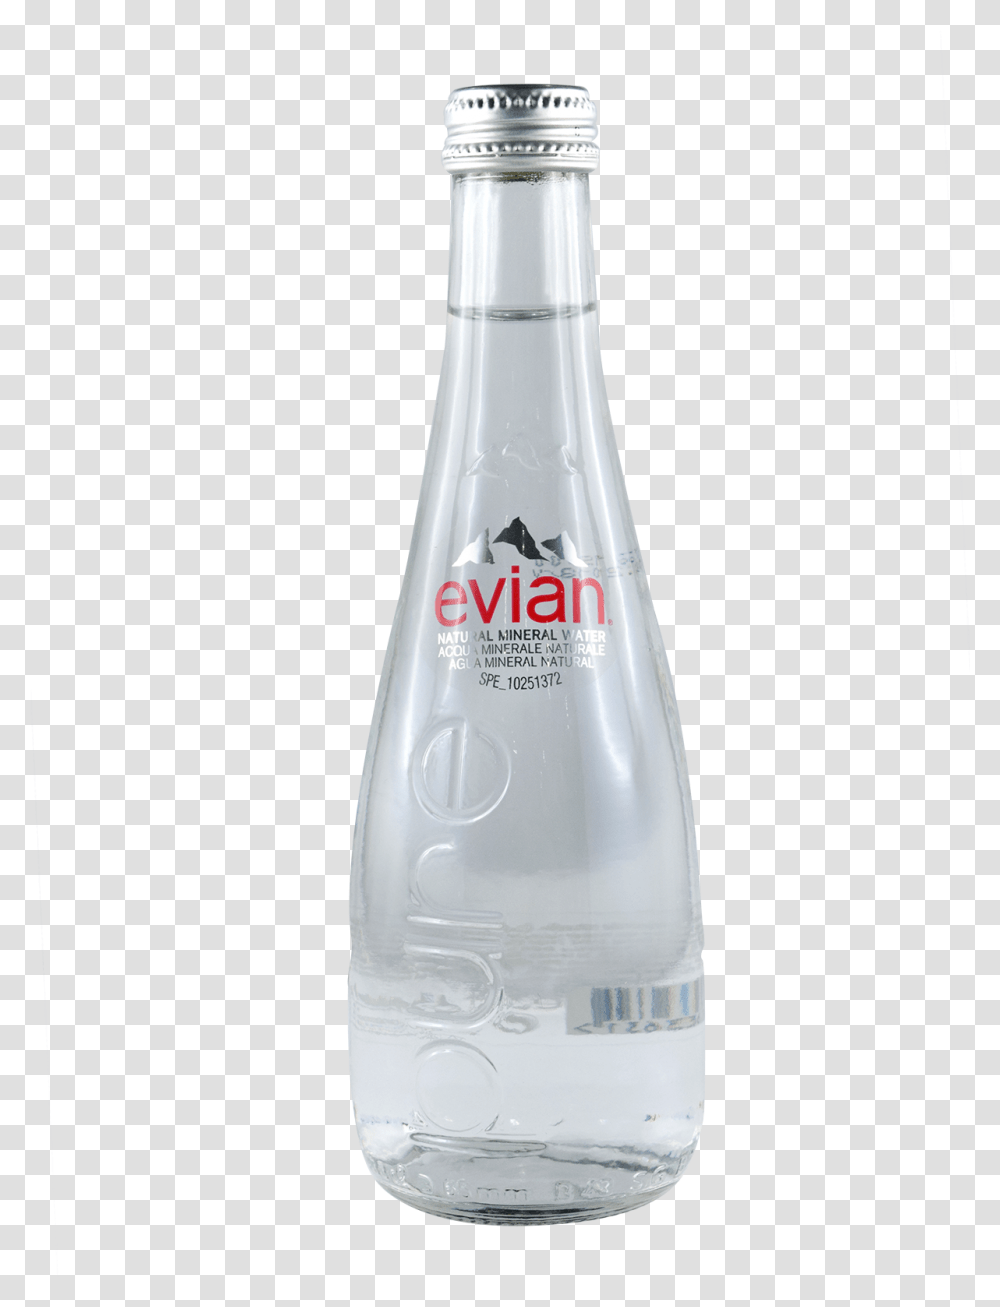 Evian Mineral Water Glass Download, Pop Bottle, Beverage, Drink, Shaker Transparent Png